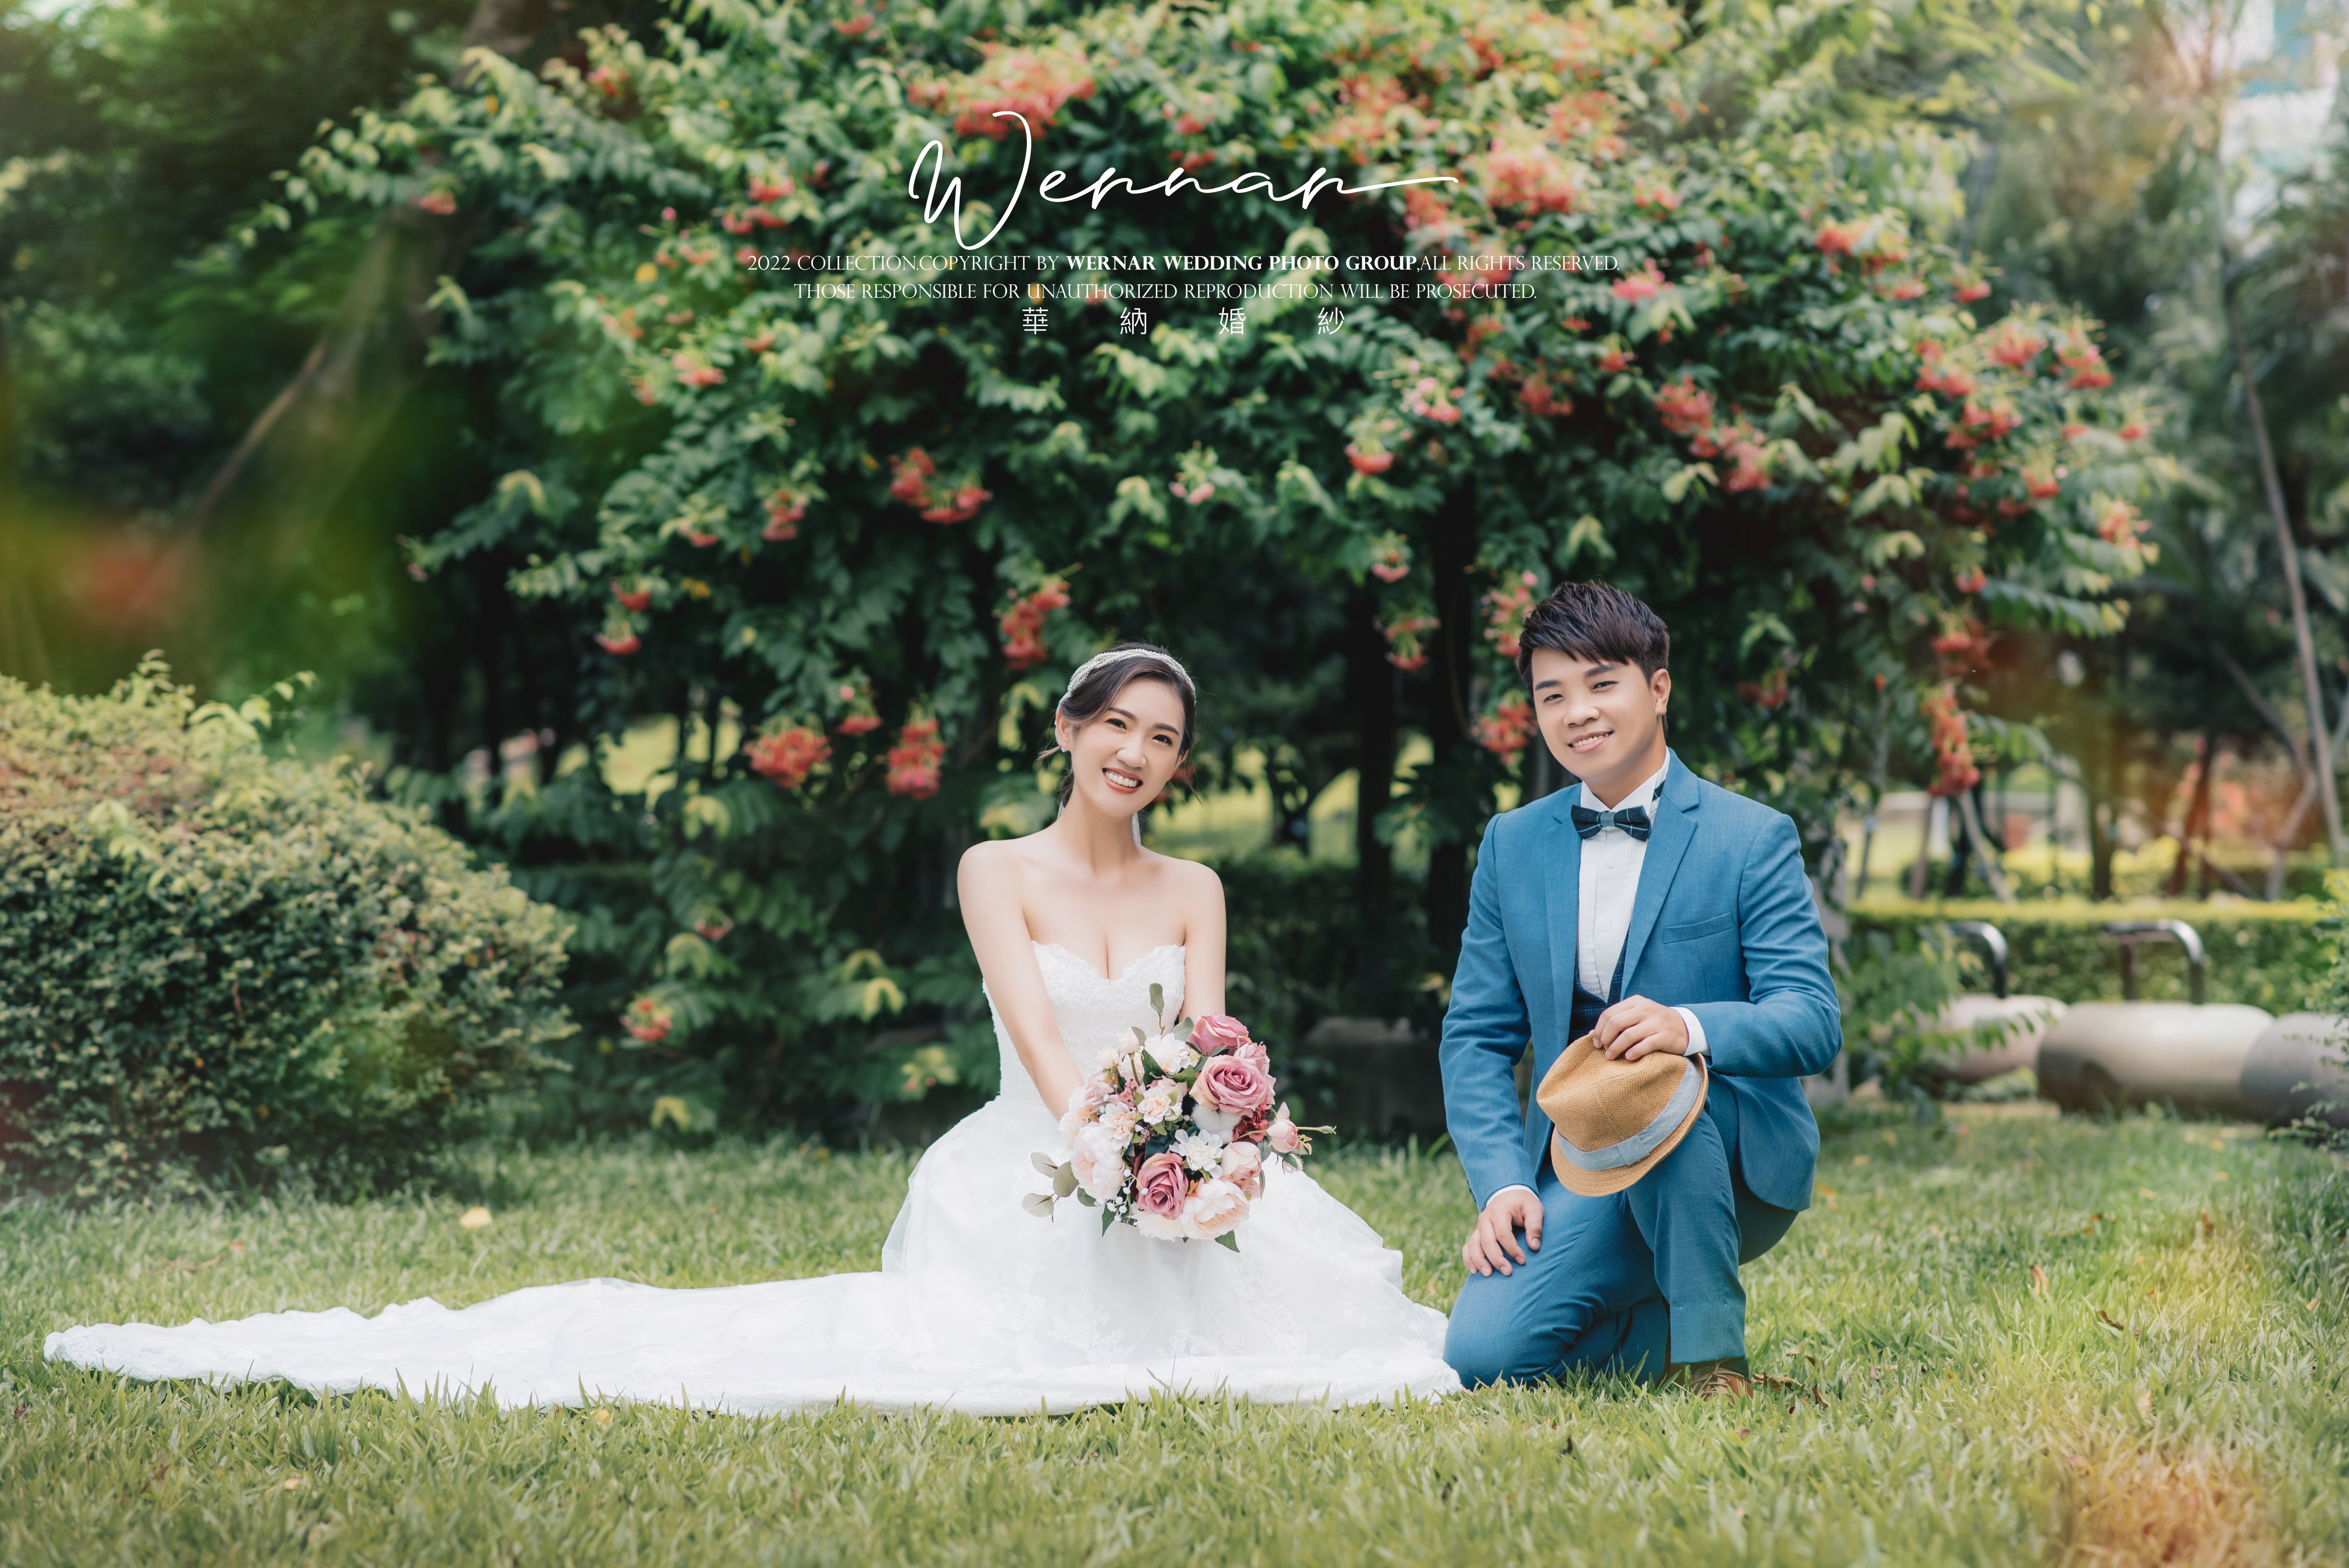 台中華納婚紗拍攝感想-婚禮廠商評價